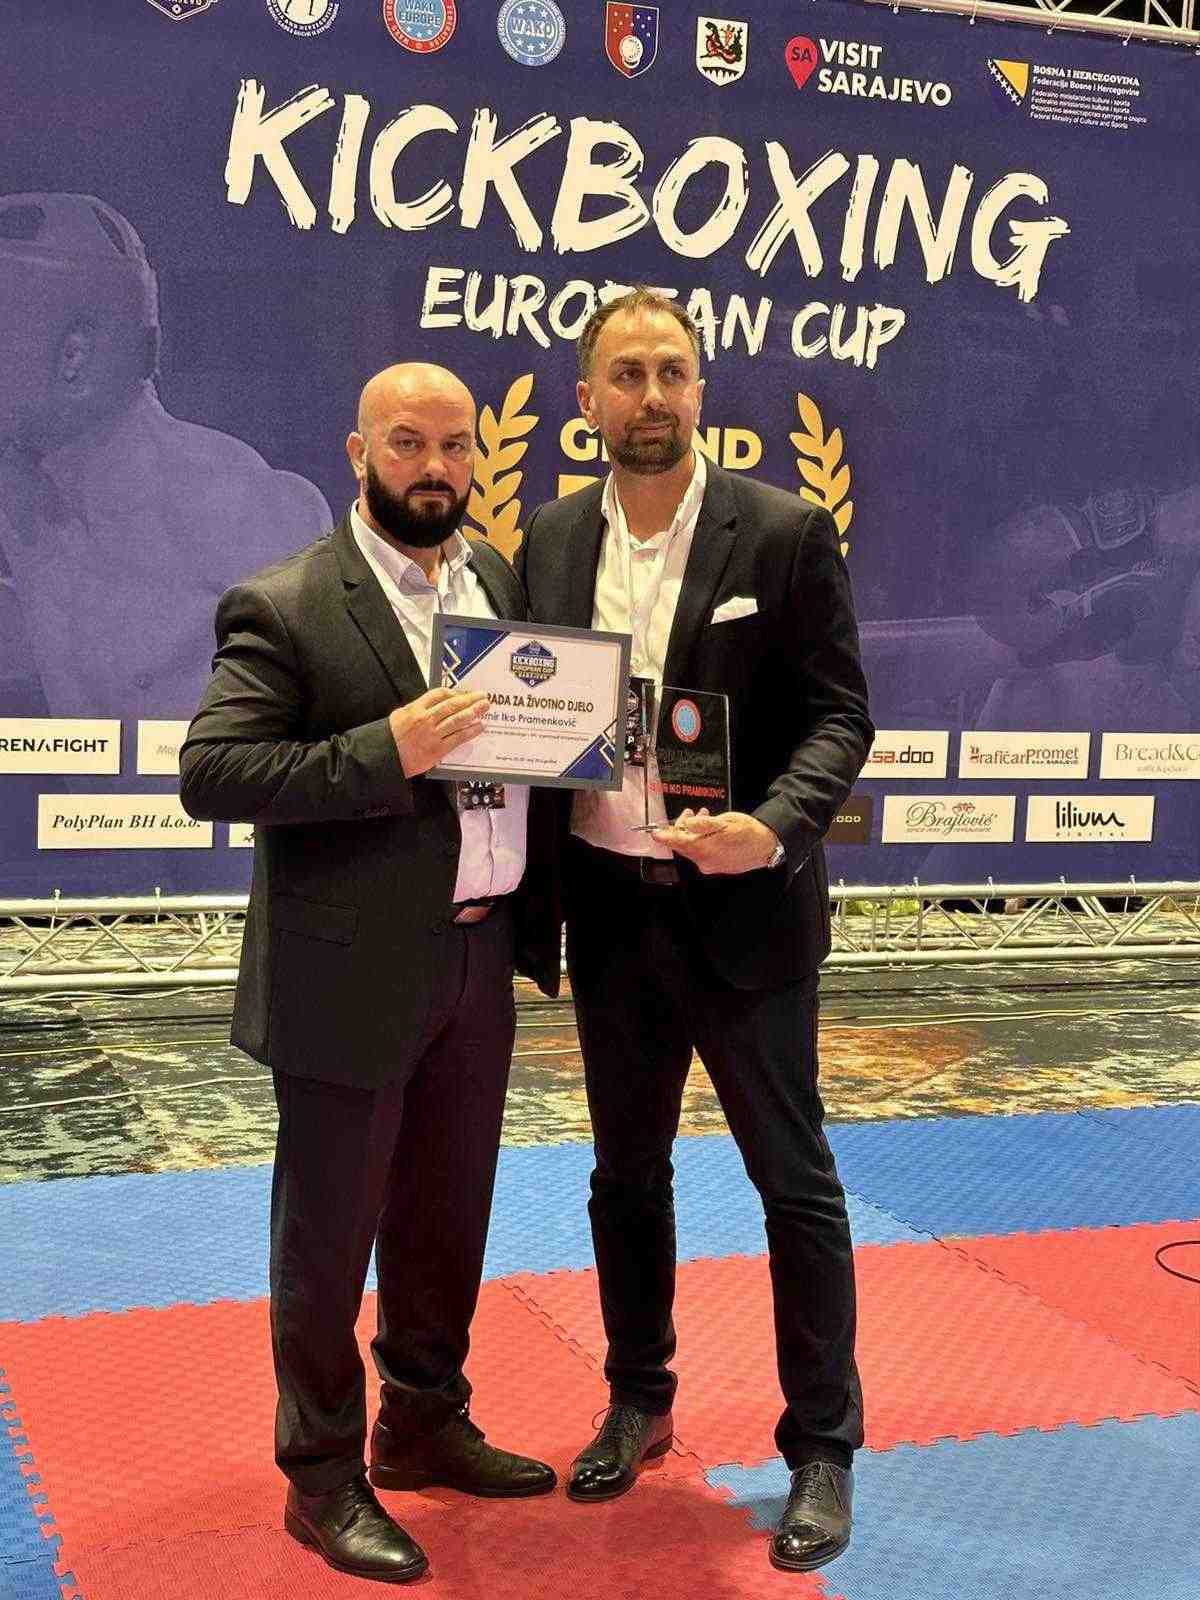 Europski kup u Kickboxingu